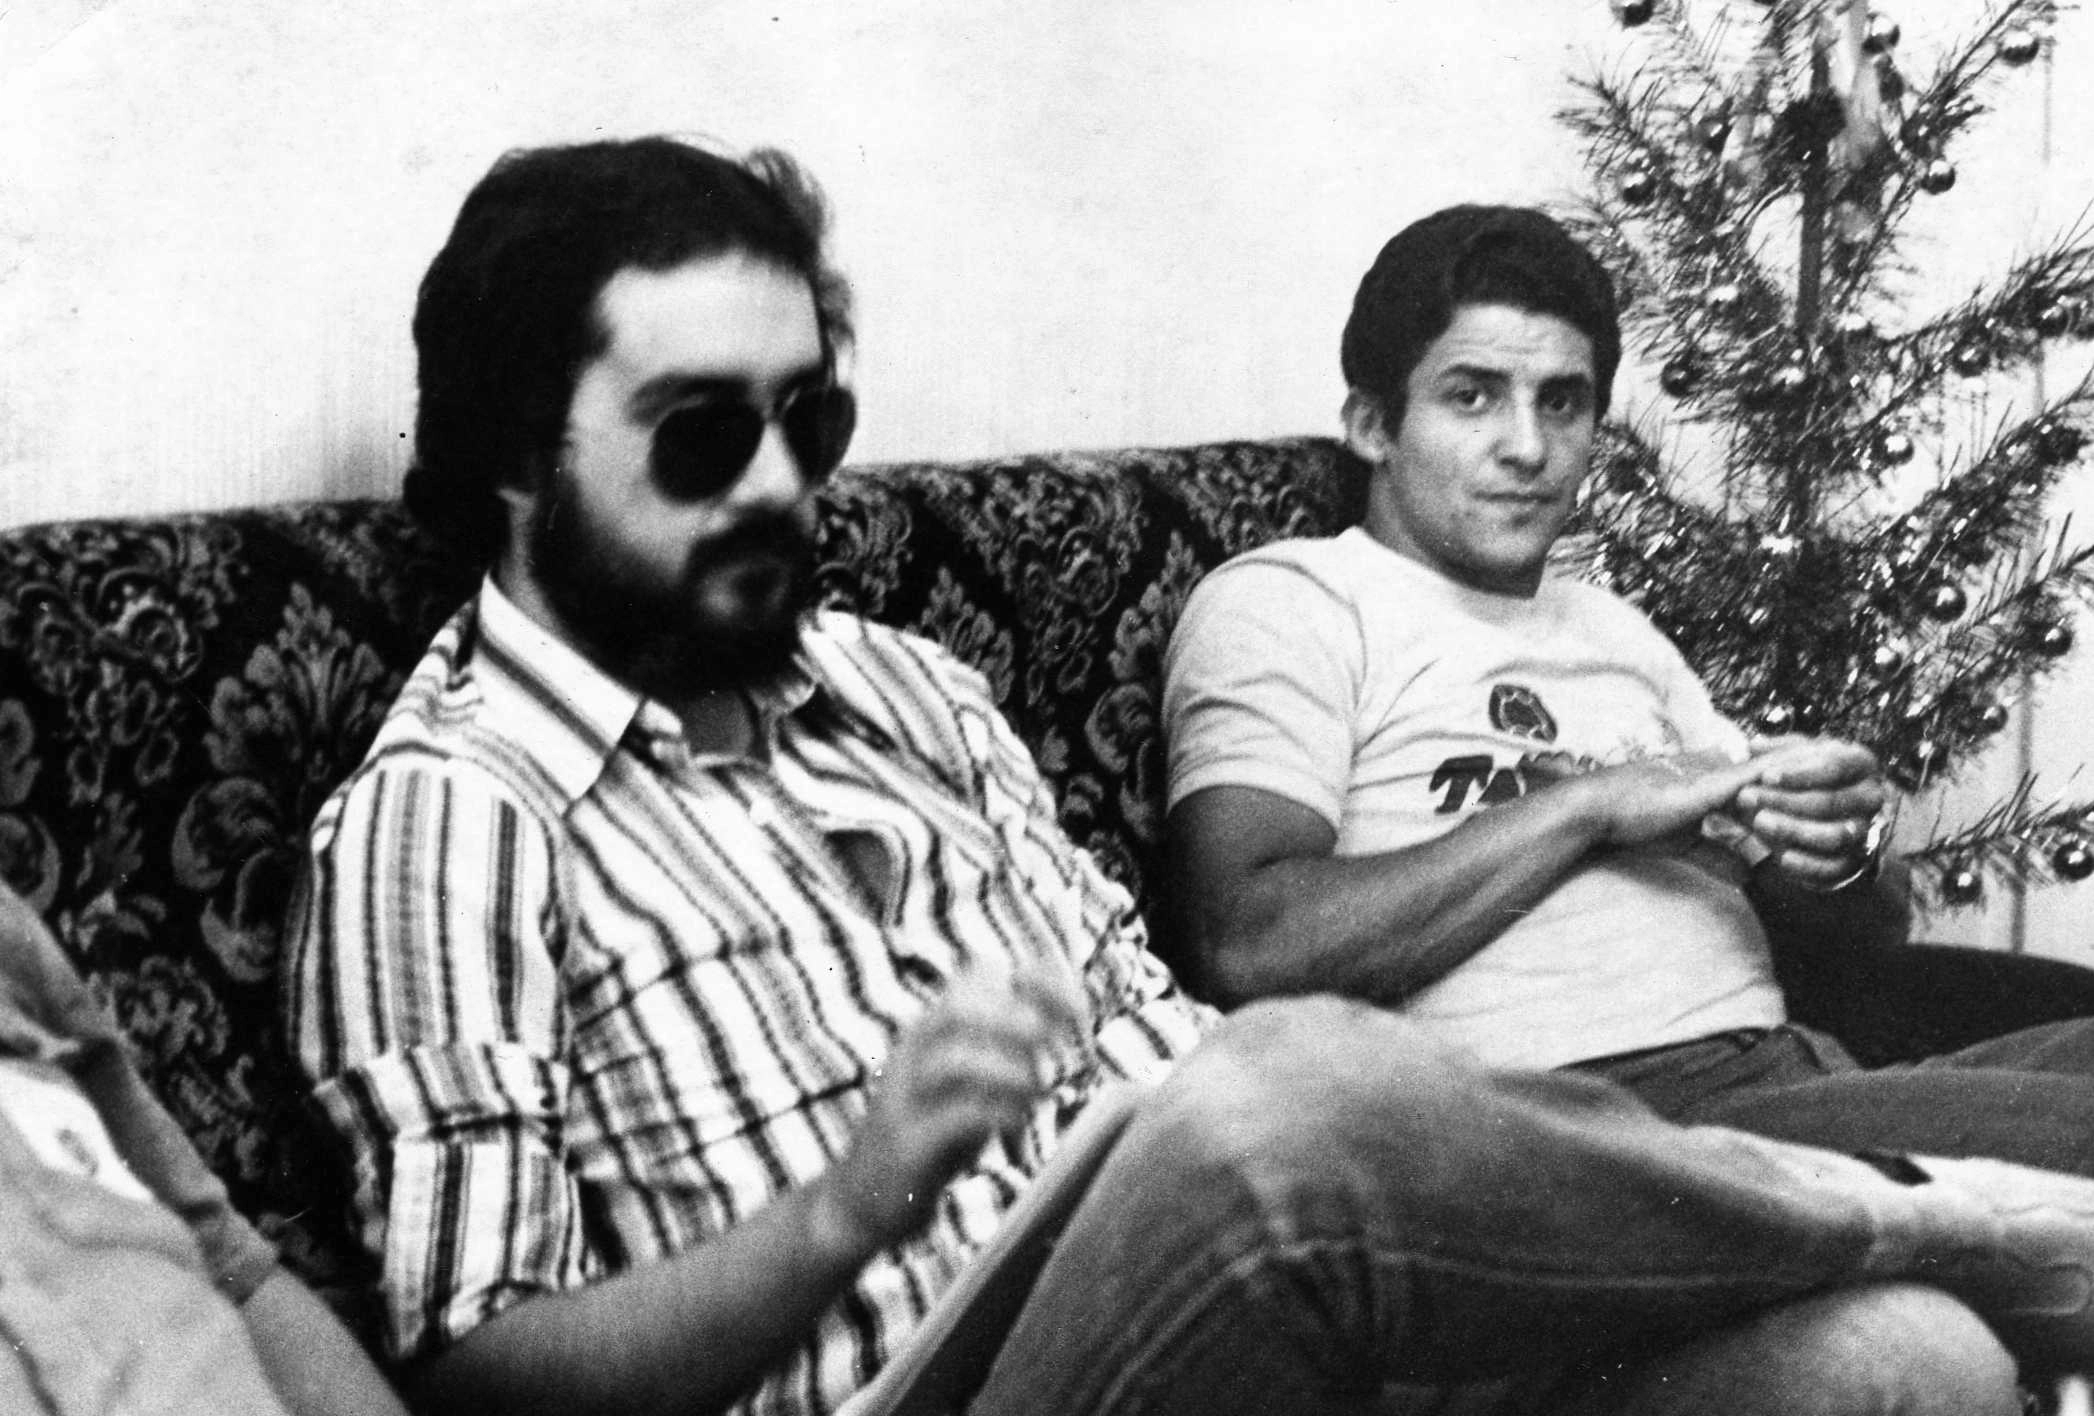 Em 1975, Barrero entrevista o ponta-direita corintiano Vaguinho em seu apartamento do Edificio Vicente Matheus, em São Paulo. Ao lado, uma árvore com bolinhas indica que é Natal